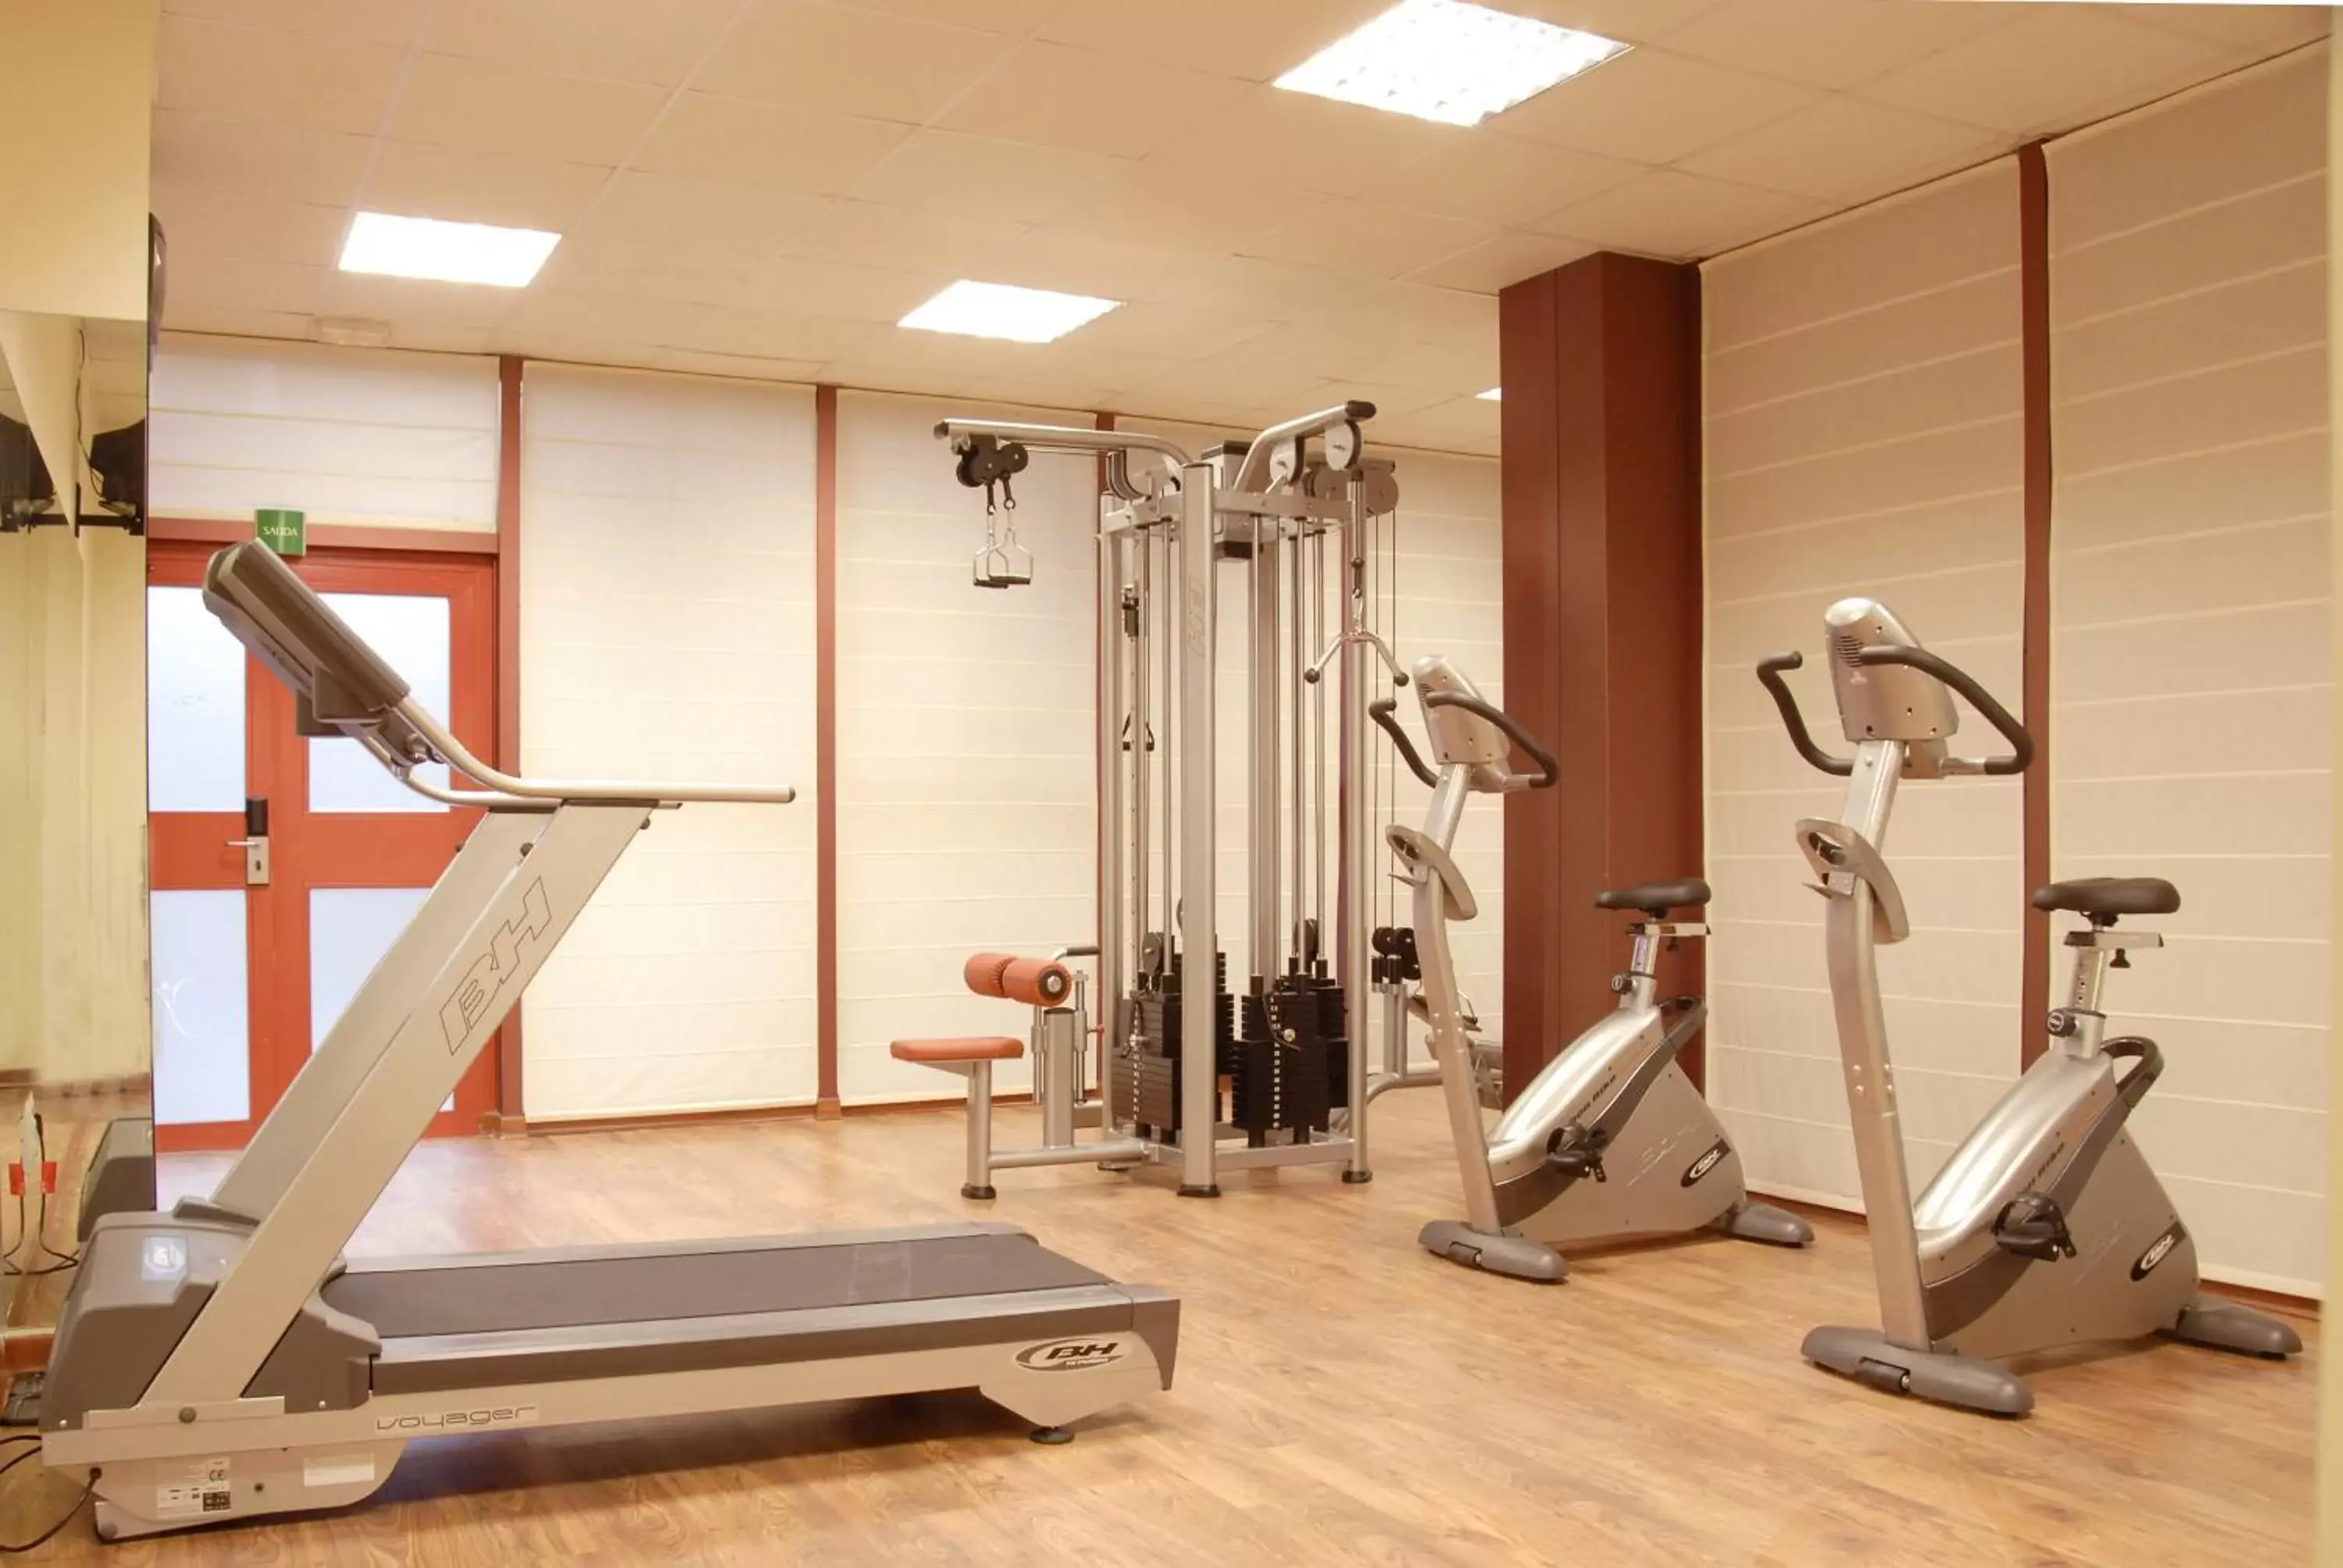 Fitness centre/facilities, Fitness Center/Facilities in Silken Puerta Madrid